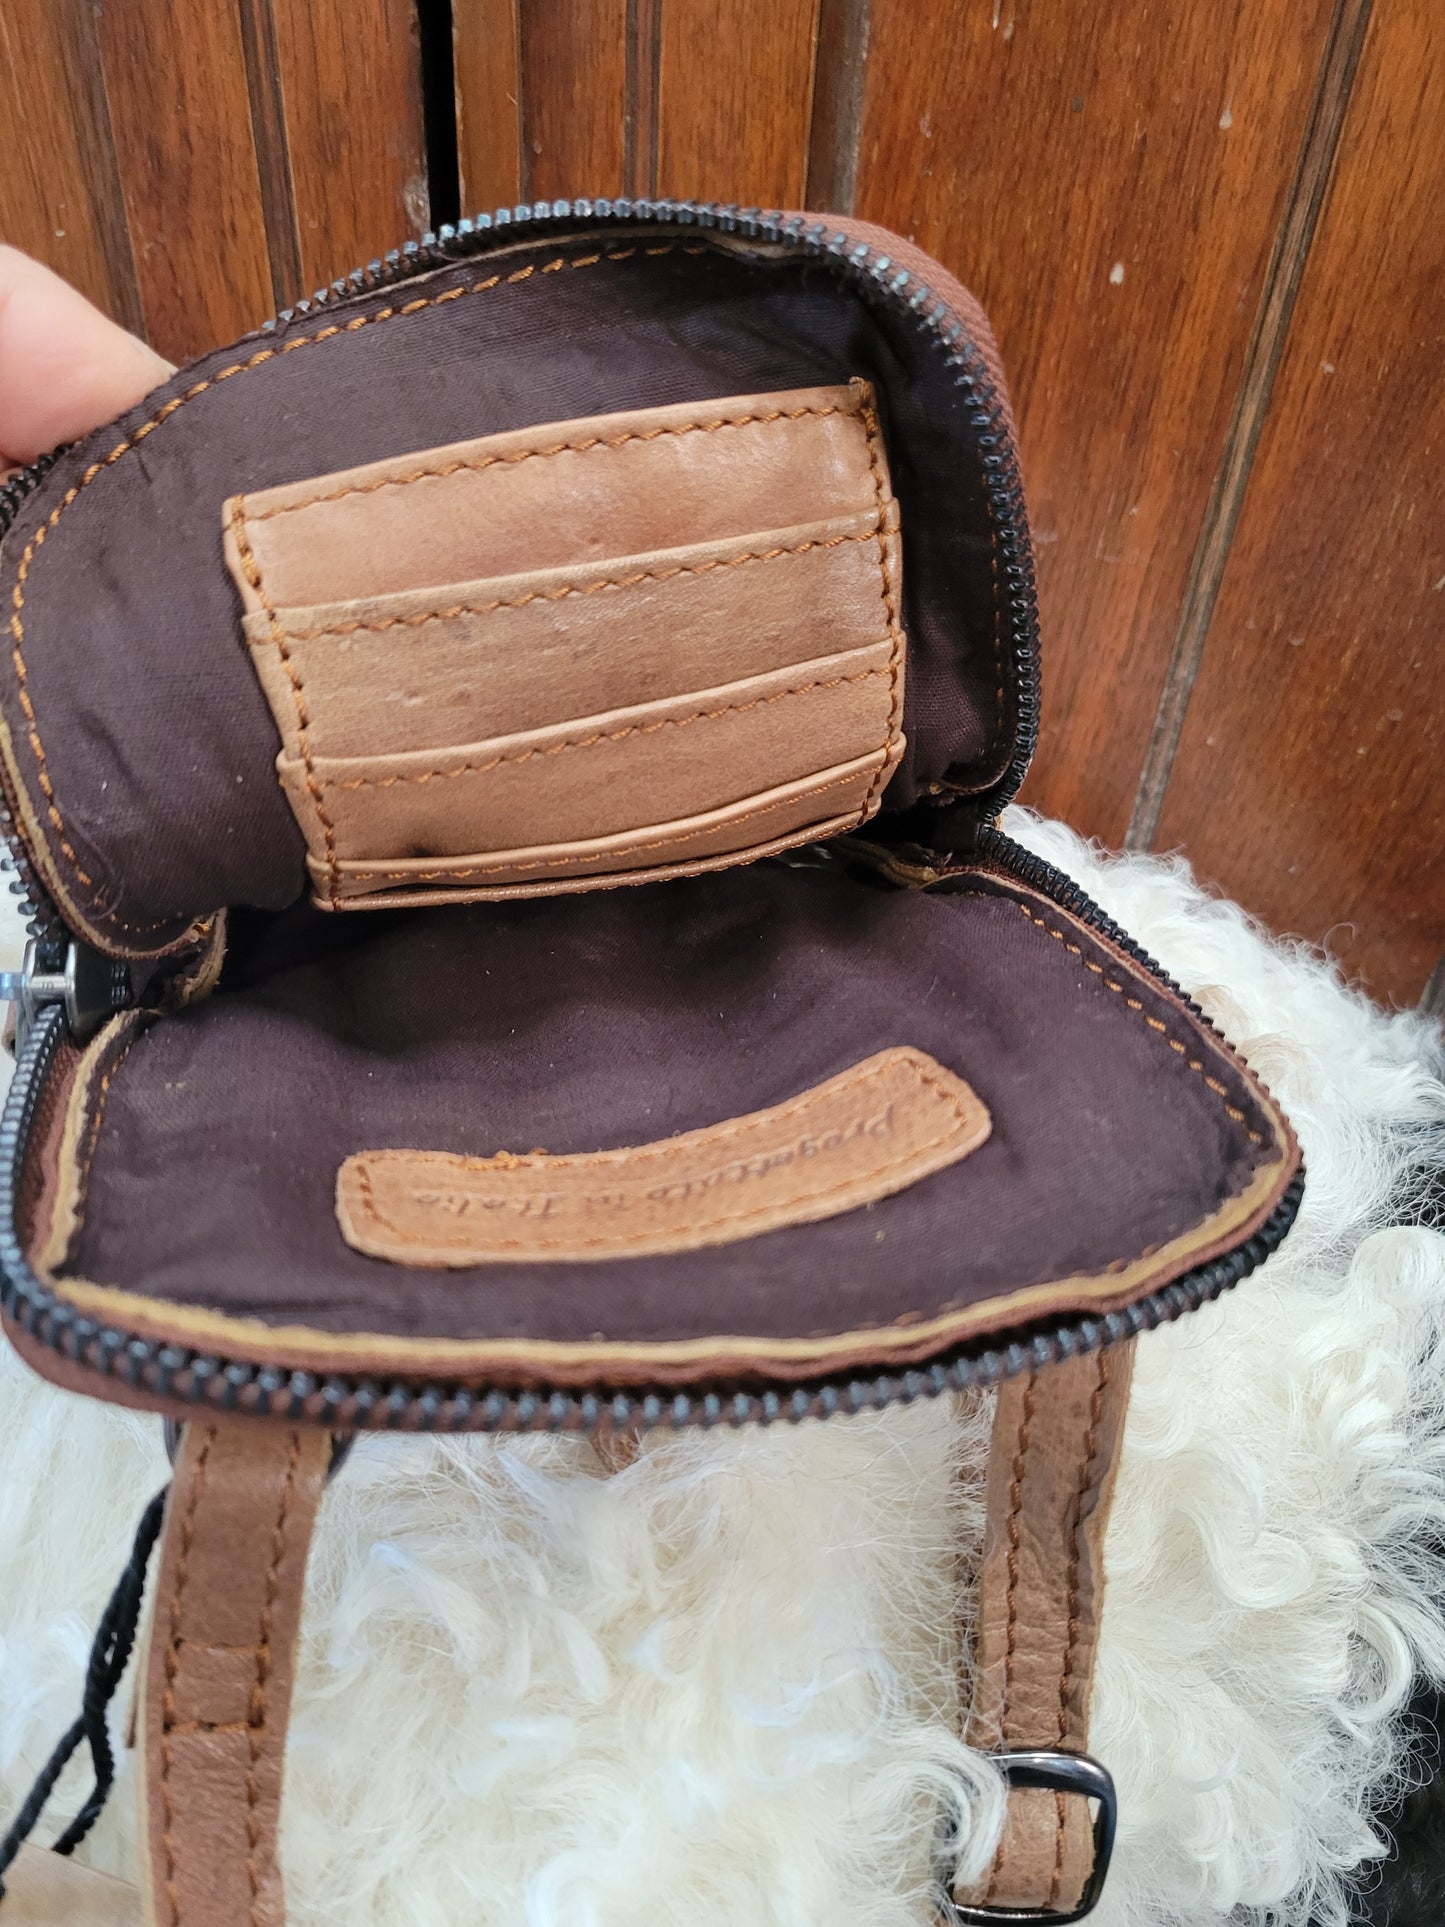 Ivy Phone Bag Wallet